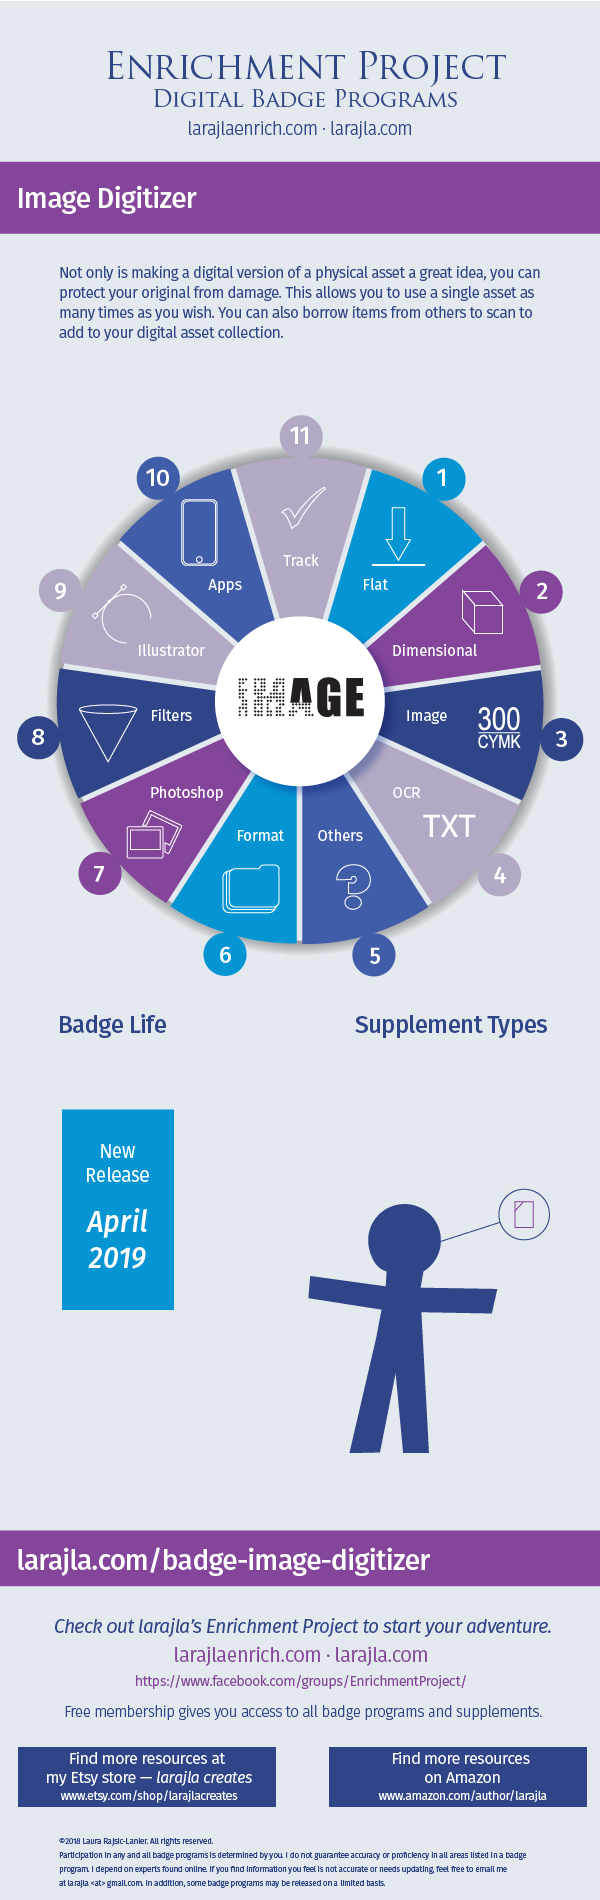 Infographic: Image Digitizer Badge Program